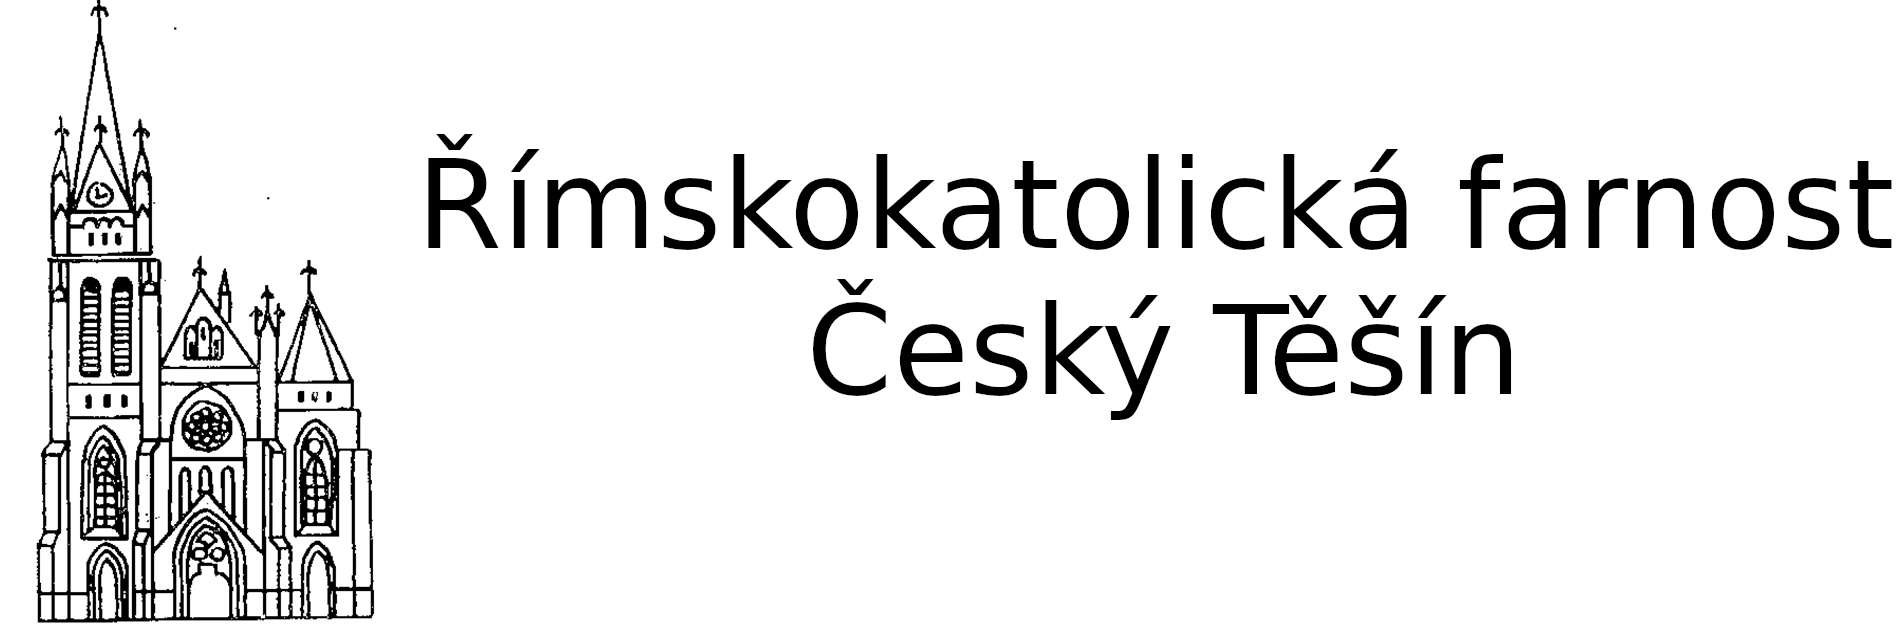 Logo 2. oddíl skautek ČT - Římskokatolická farnost Český Těšín